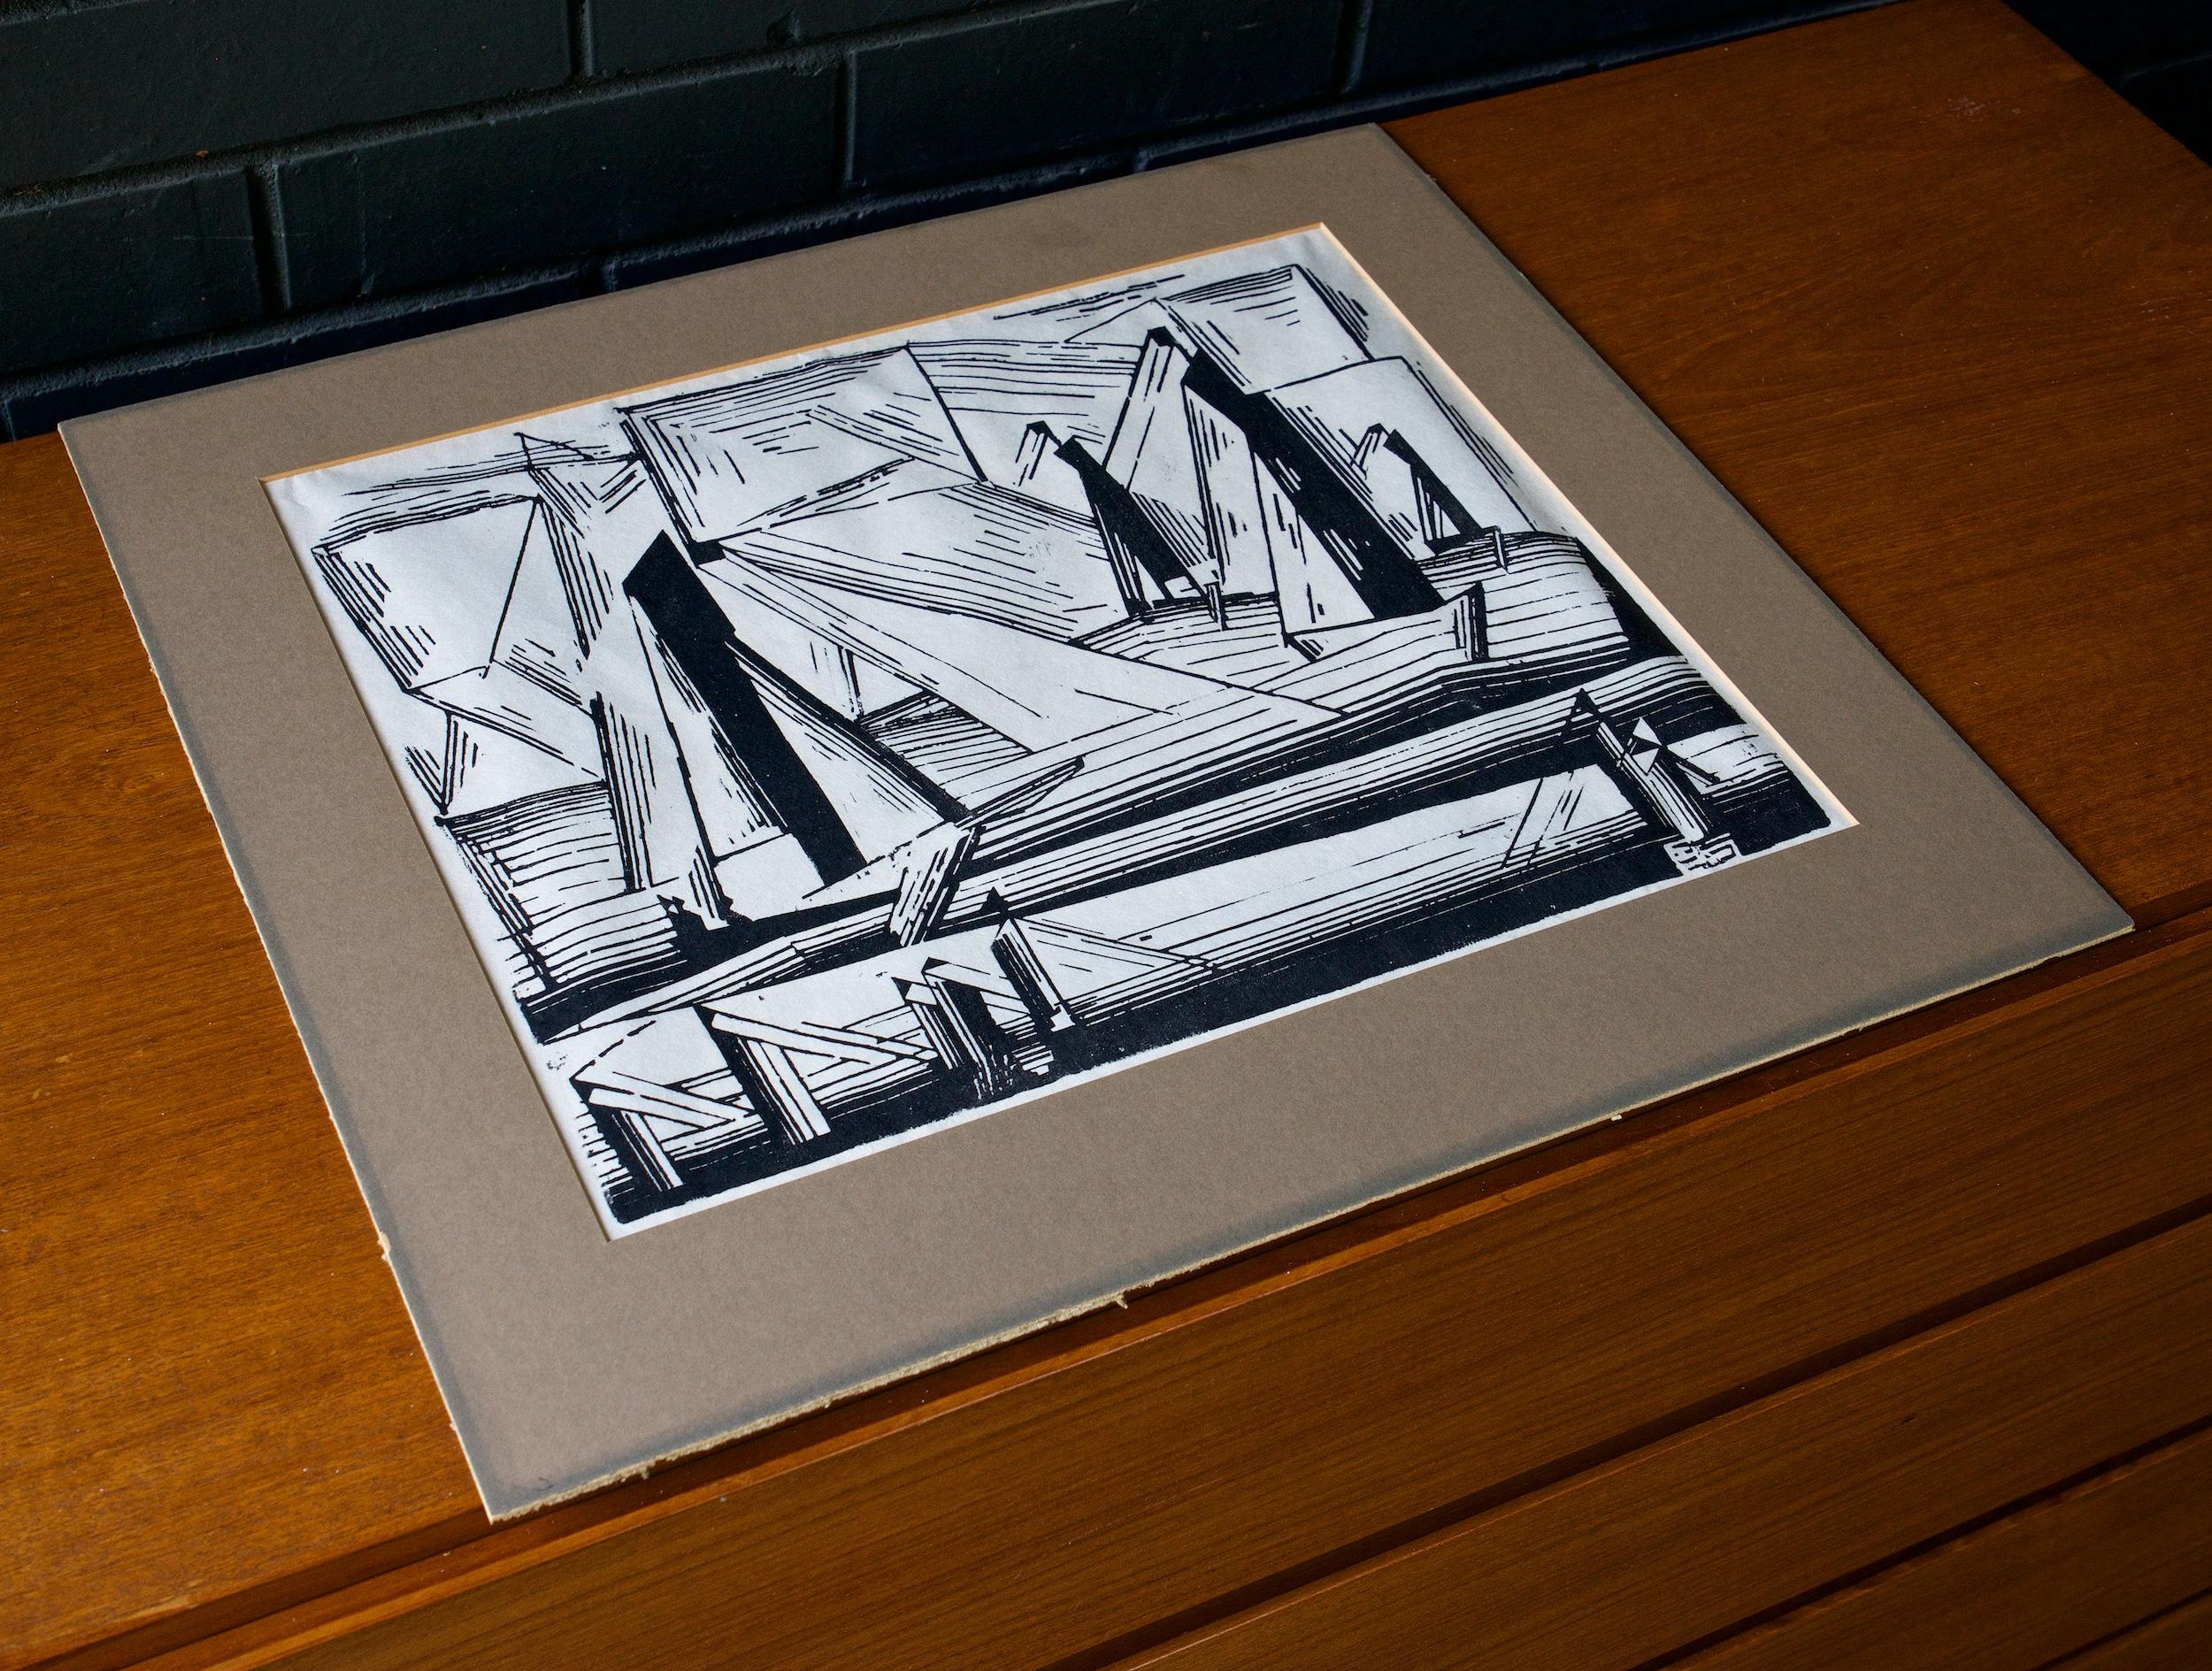 Lyonel Feininger (Amerikaner 1871-1956) Fischerboote, 1921, Holzschnitt auf Papier. Dieses Exemplar stammt aus der Ausgabe Nr. 49 des Print Club of Cleveland von 1971, einer posthumen Auflage von 252 Exemplaren. 

Bild 14,75 x 11,75 Zoll.
Matt